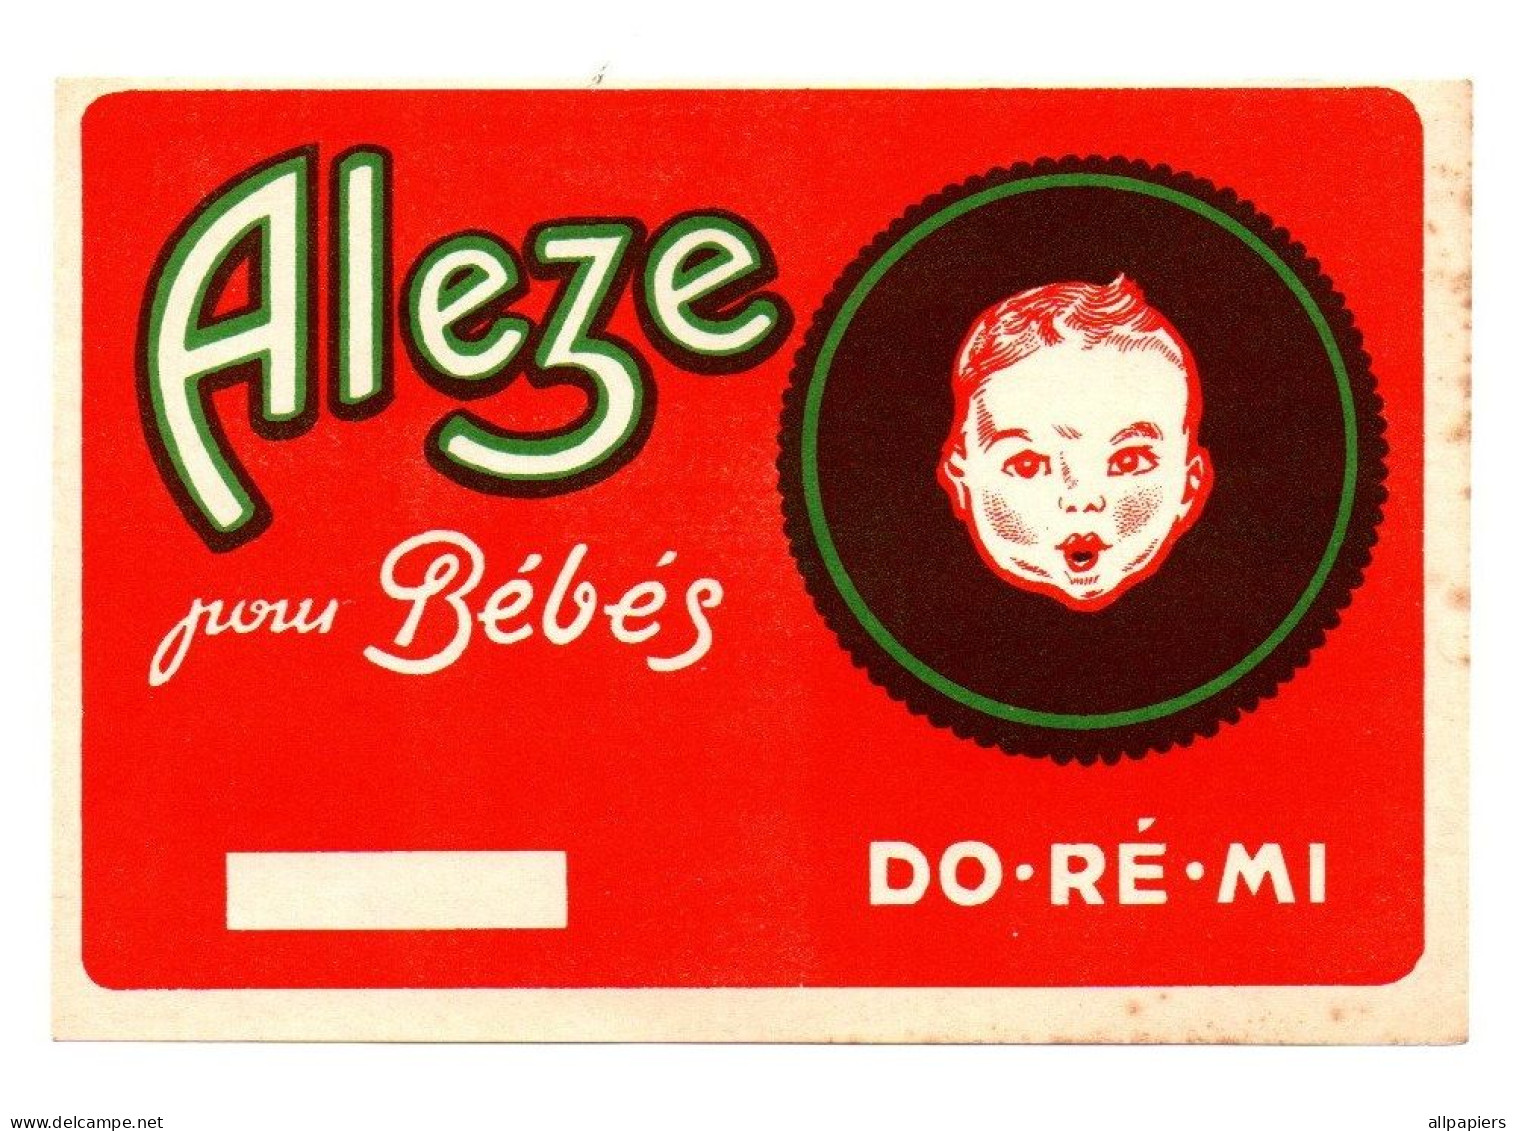 Advertising - Publicité Aleze pour bébés Do.Ré.Mi - Format : 15x10.5 cm